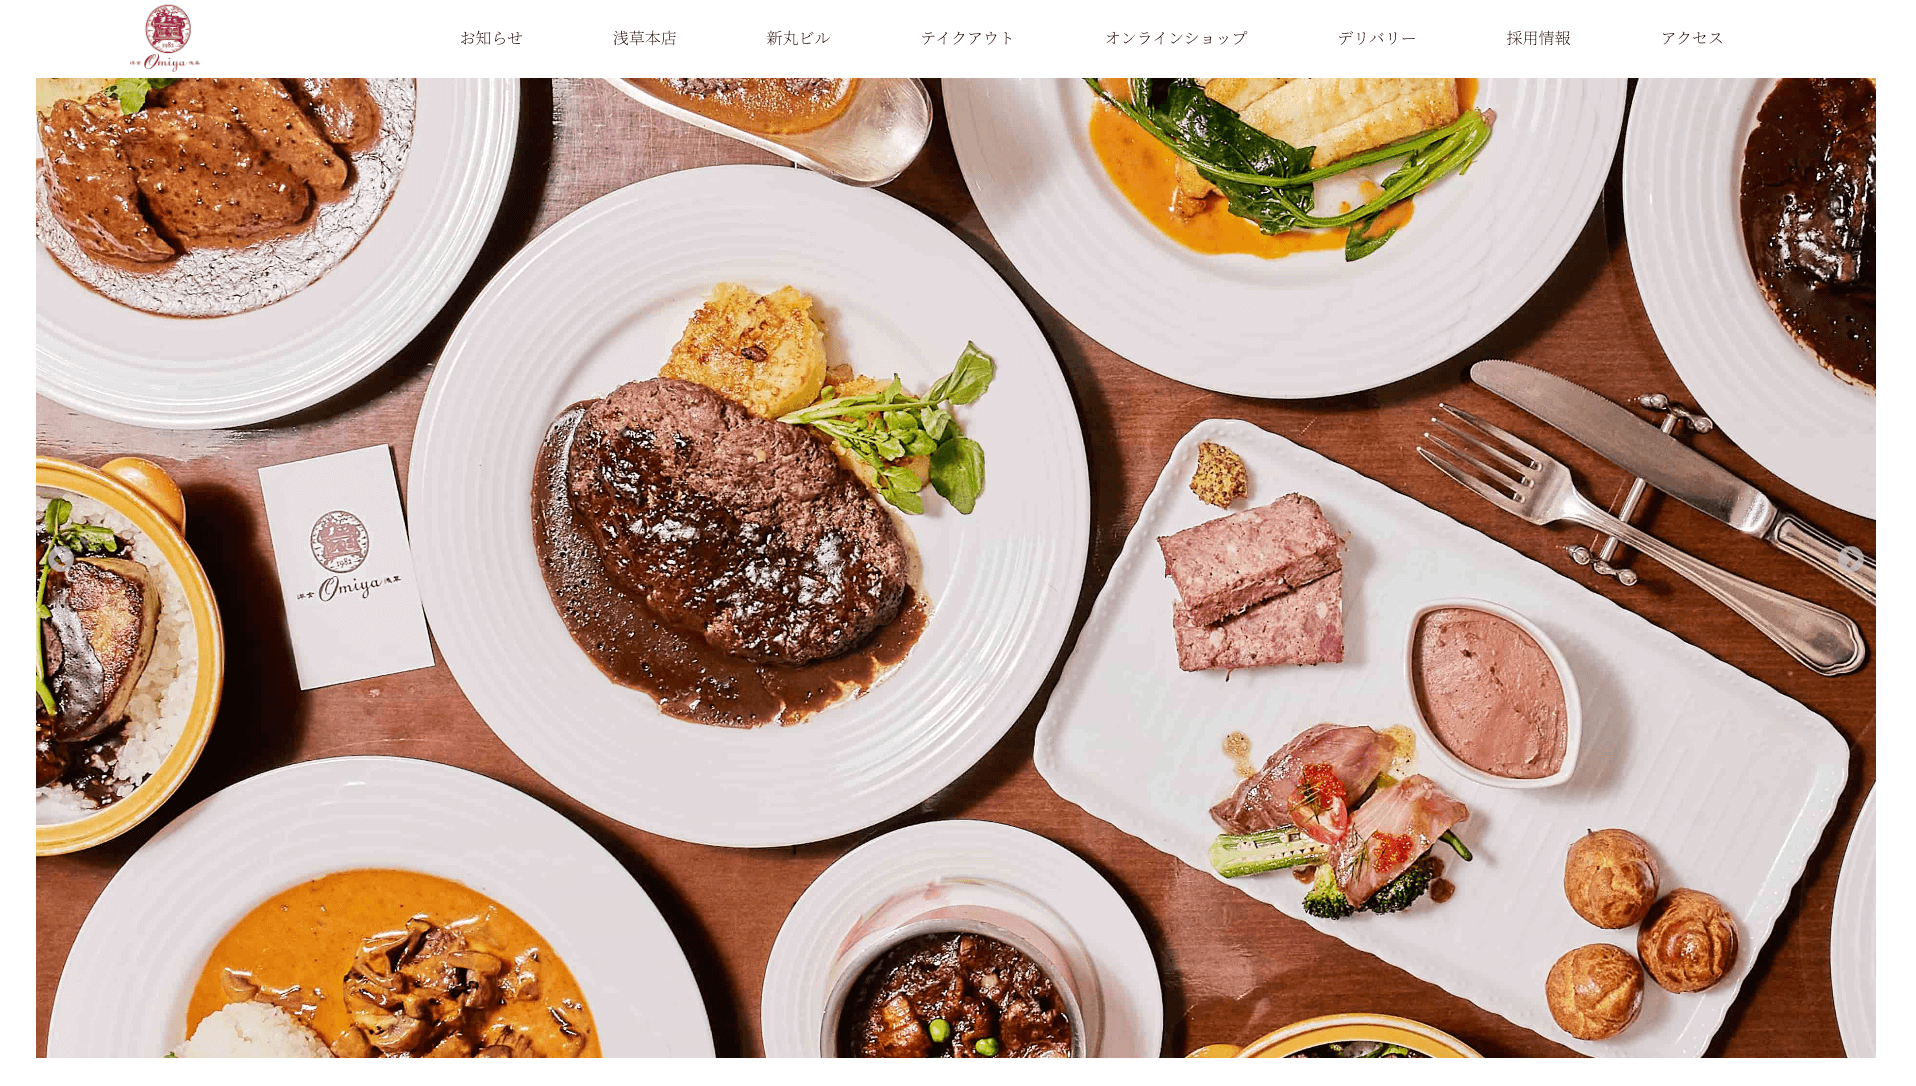 コーポレートサイトにWordPressテーマを使ったレストラン大宮の事例